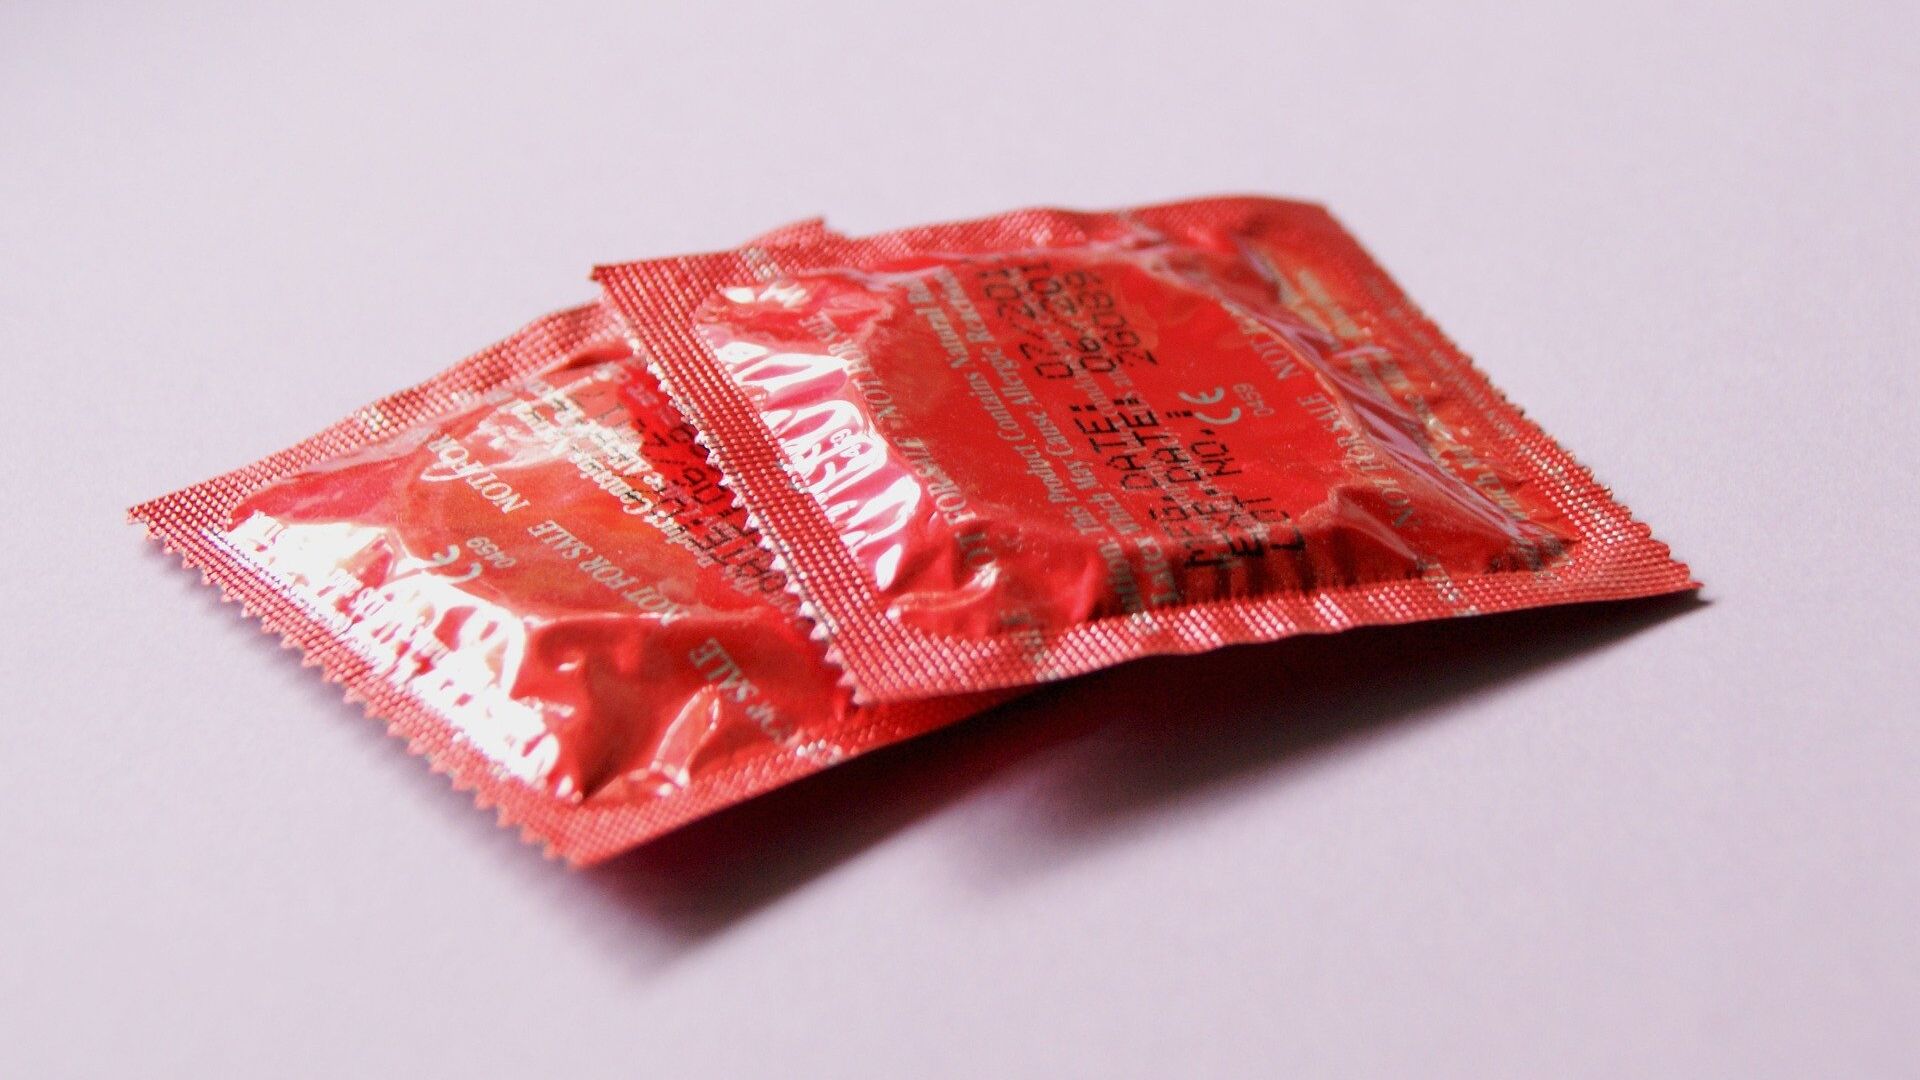 Condoms - Sputnik International, 1920, 09.07.2021